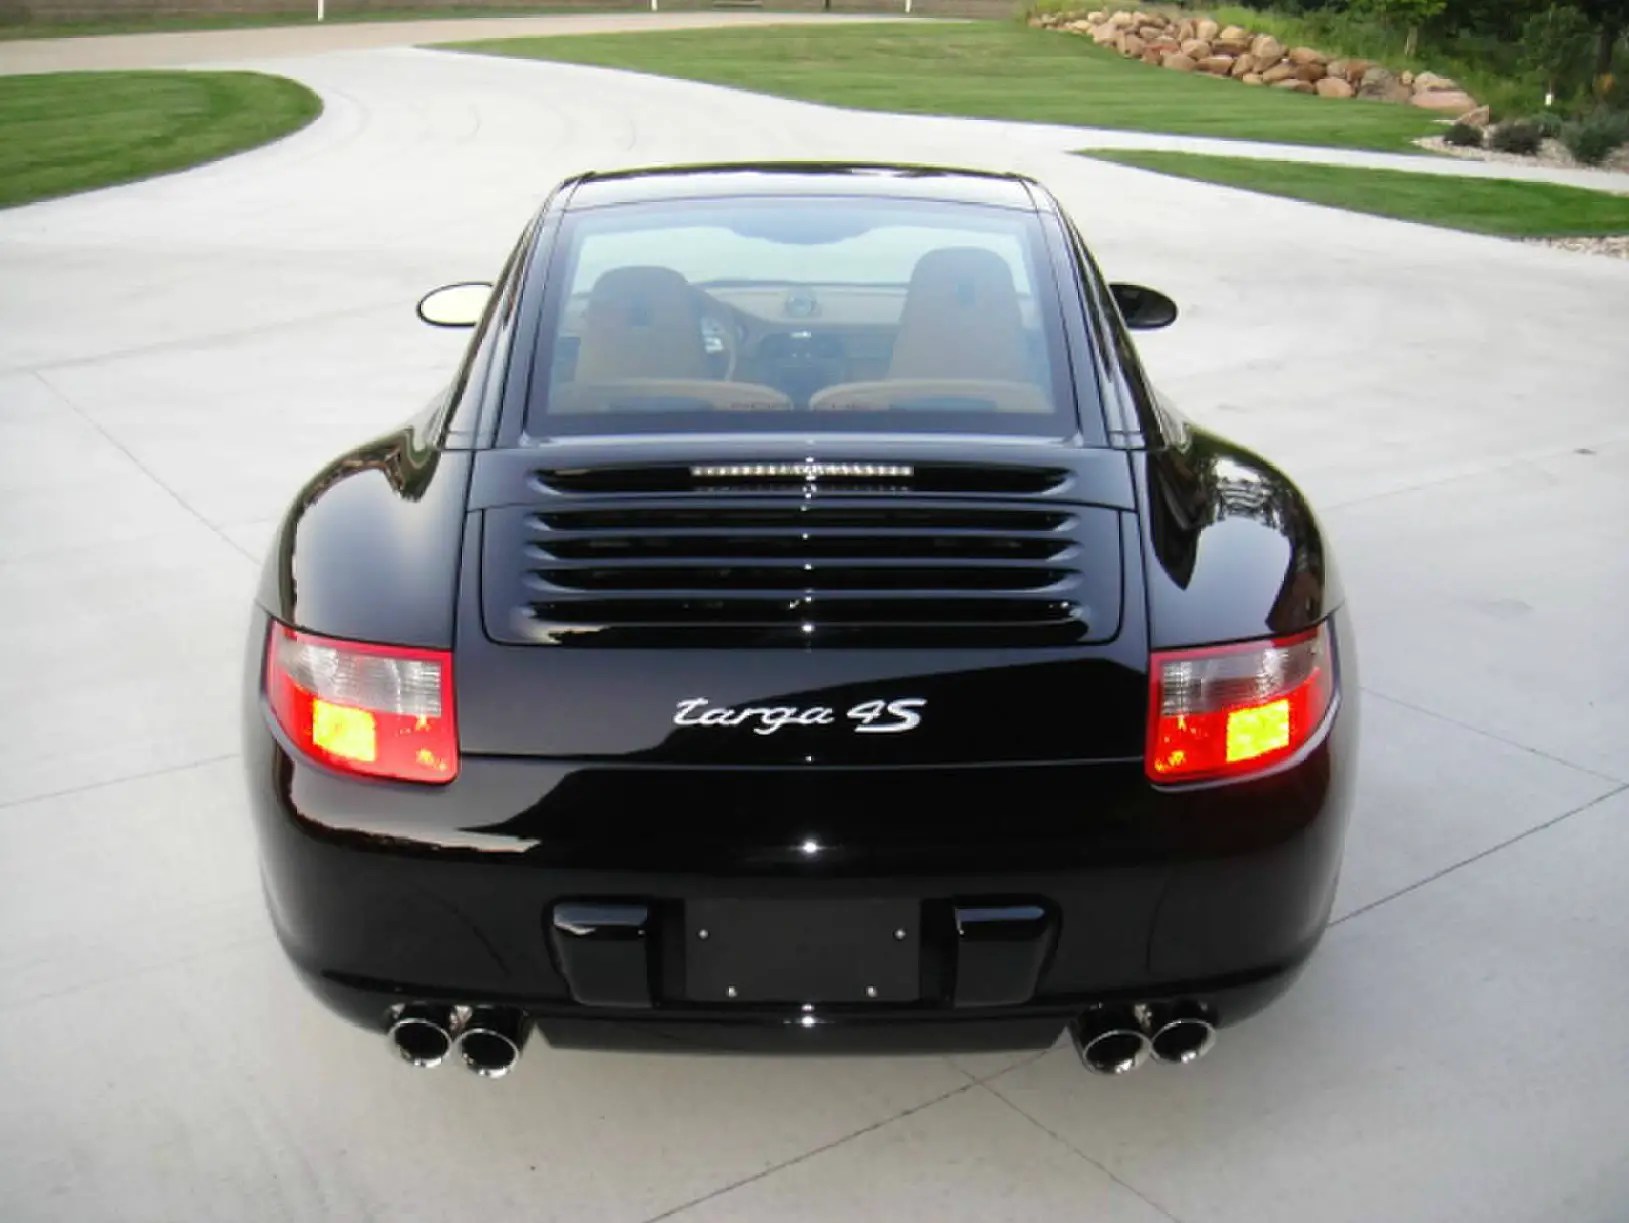 2011 Porsche 911 Targa 4S